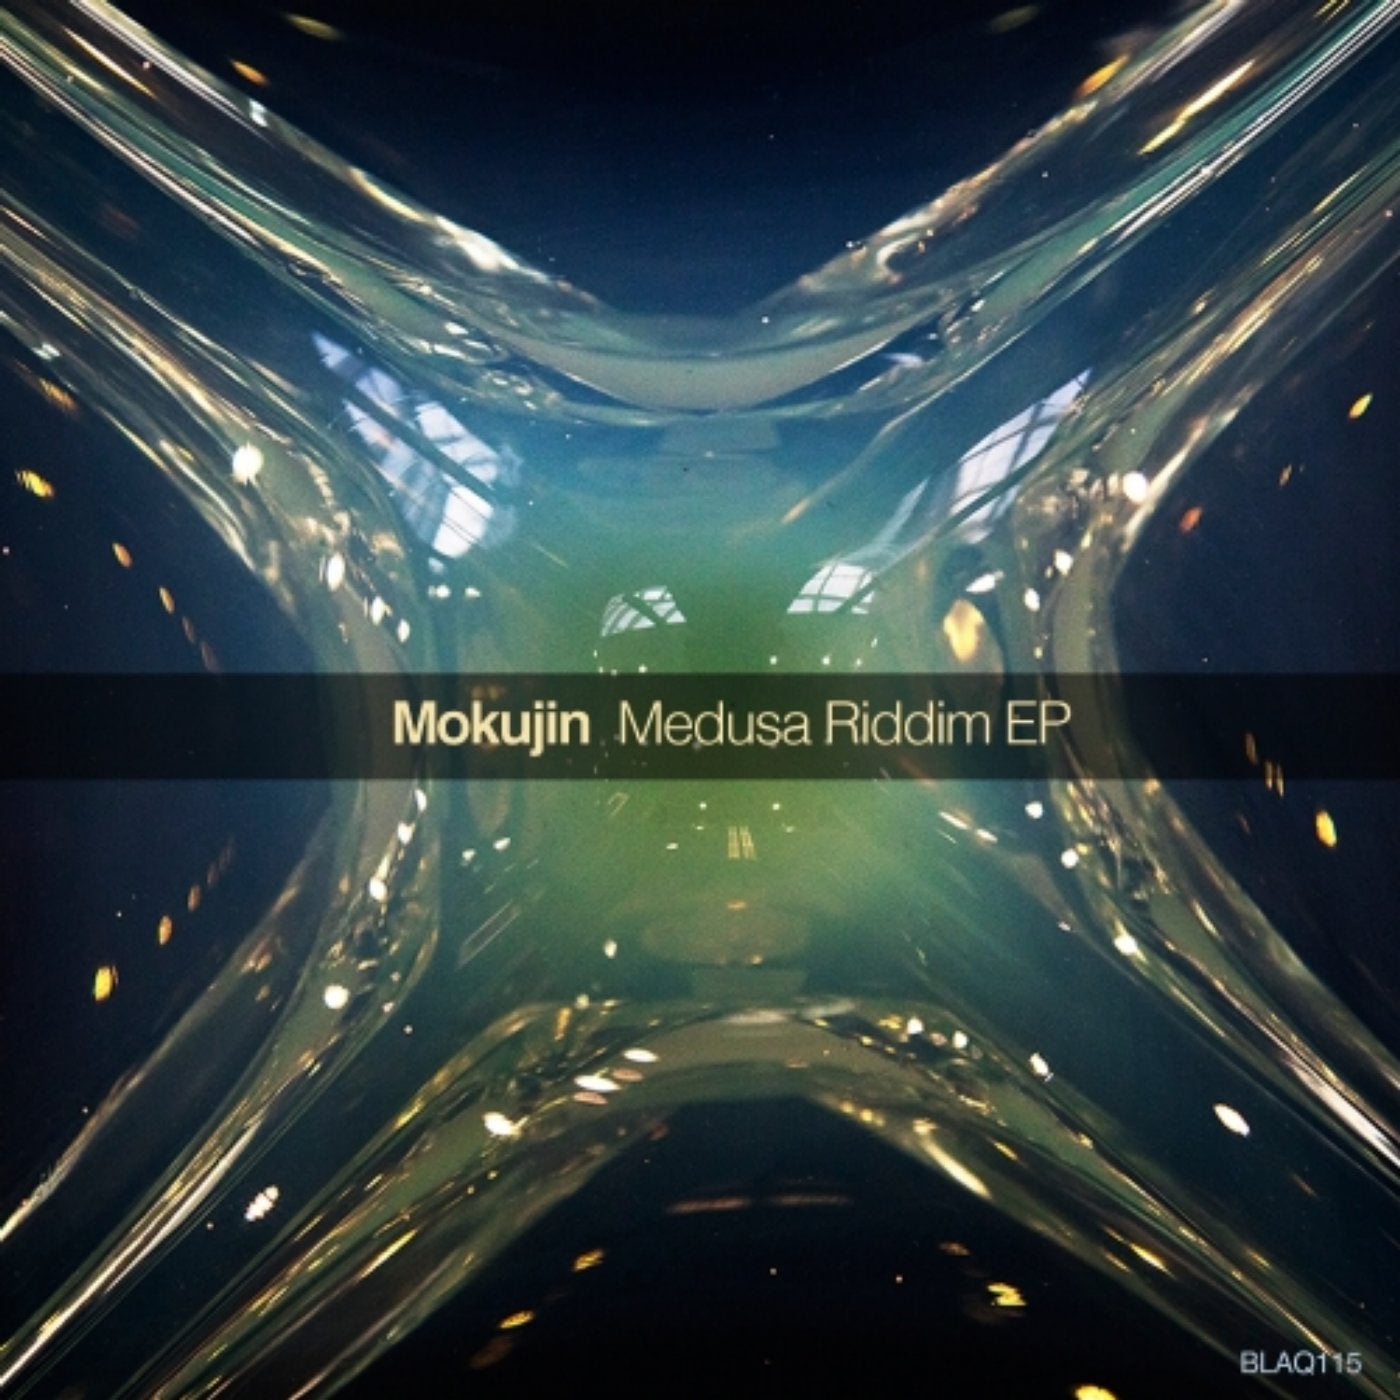 Medusa Riddim EP